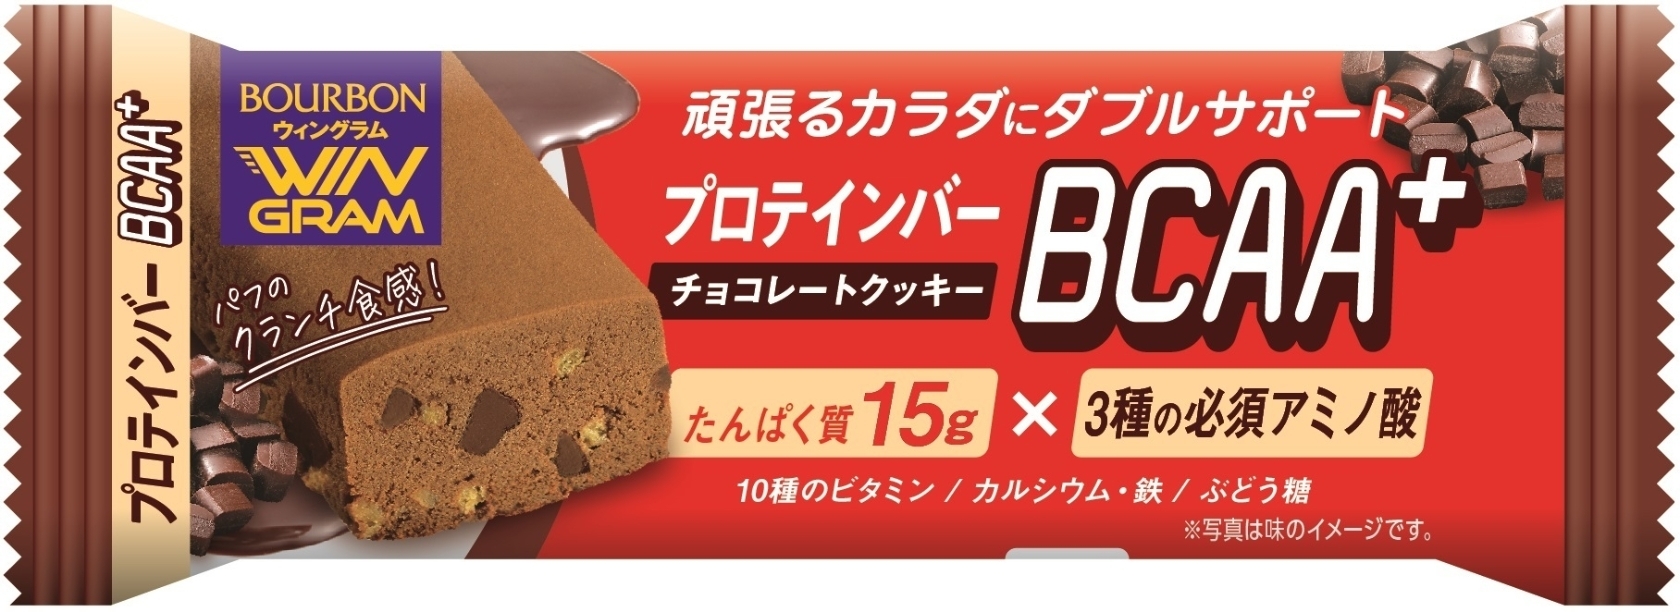 12月スーパーSALE ブルボン プロテインバー BCAA チョコレートクッキー 54本 9本入×6 まとめ買い 栄養調整食品 